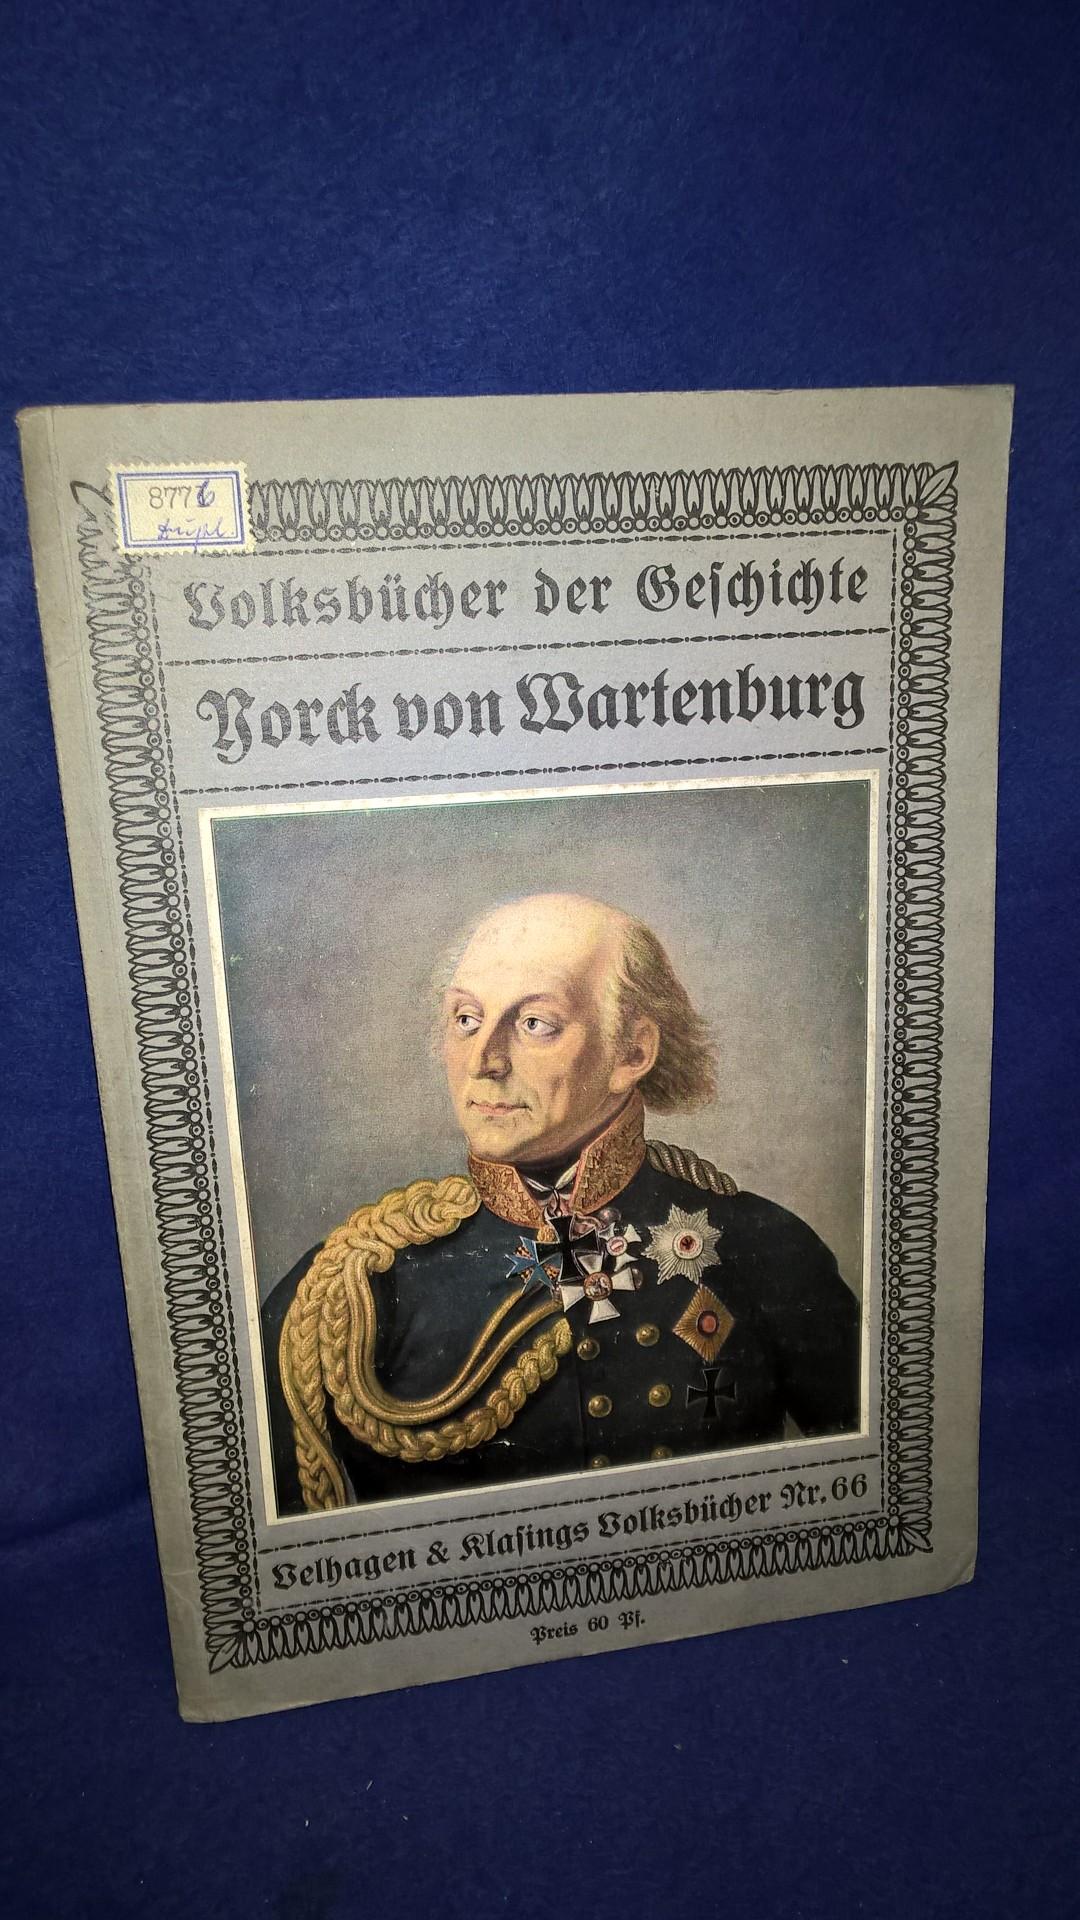 Volksbücher der Geschichte.Yorck von Wartenburg